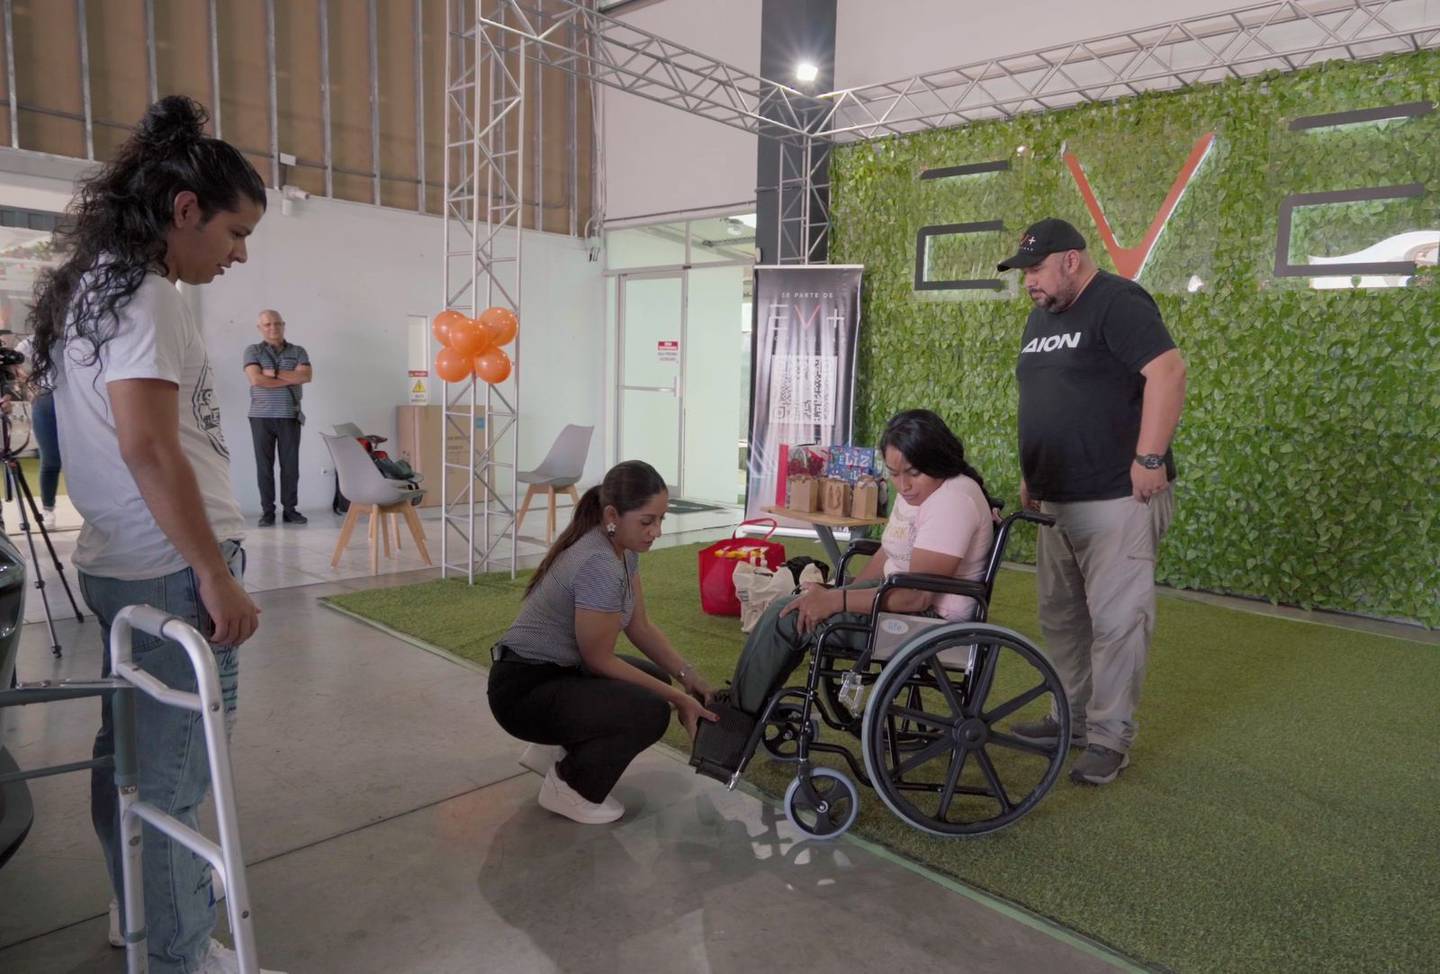 Elizabeth Espinoza recibió una silla de ruedas y varios obsequios de parte de un grupo de gente que se conoció porque compraron un carro eléctrico.